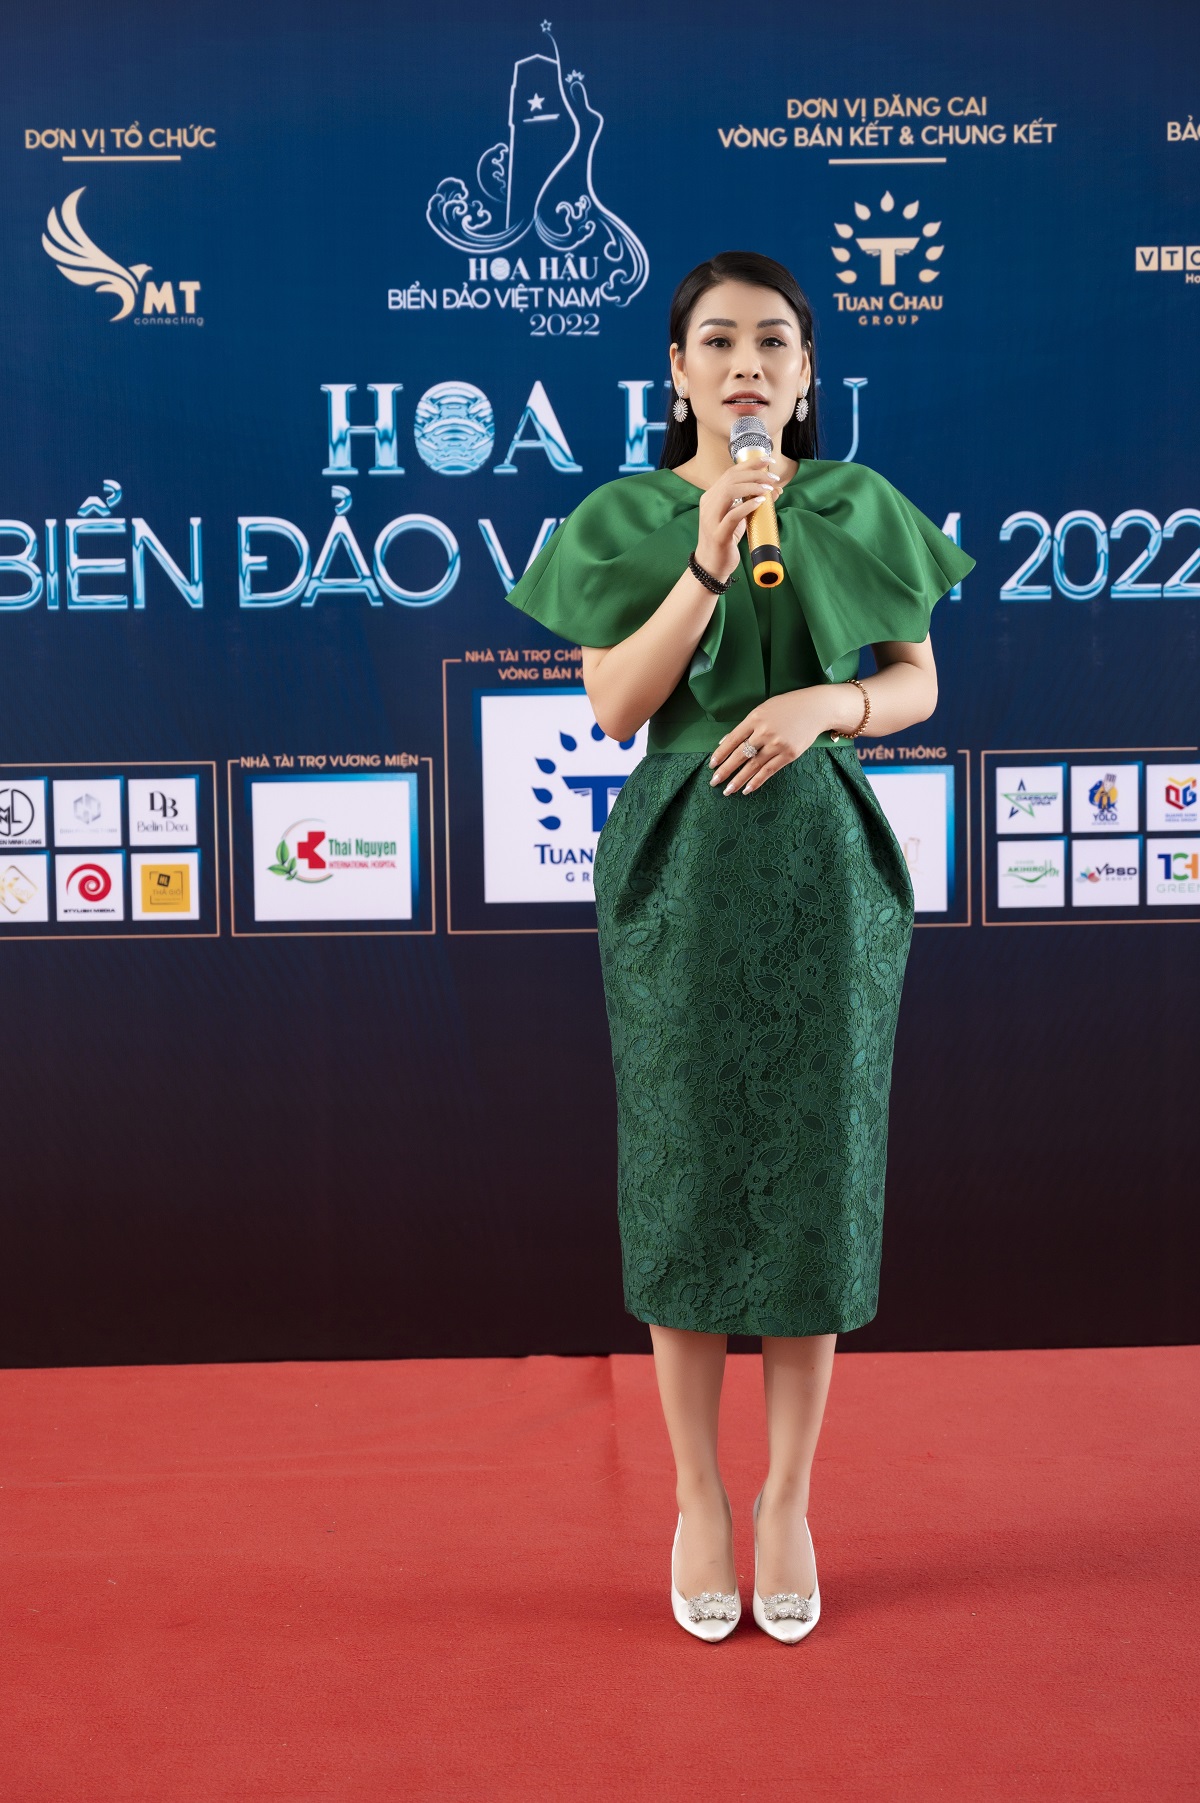 DSC_9899 Bà Đàm Hương Thủy - Chủ tịch của cuộc thi Hoa hậu Biển đảo Việt Nam 2022 - Trưởng Ban tổ chức